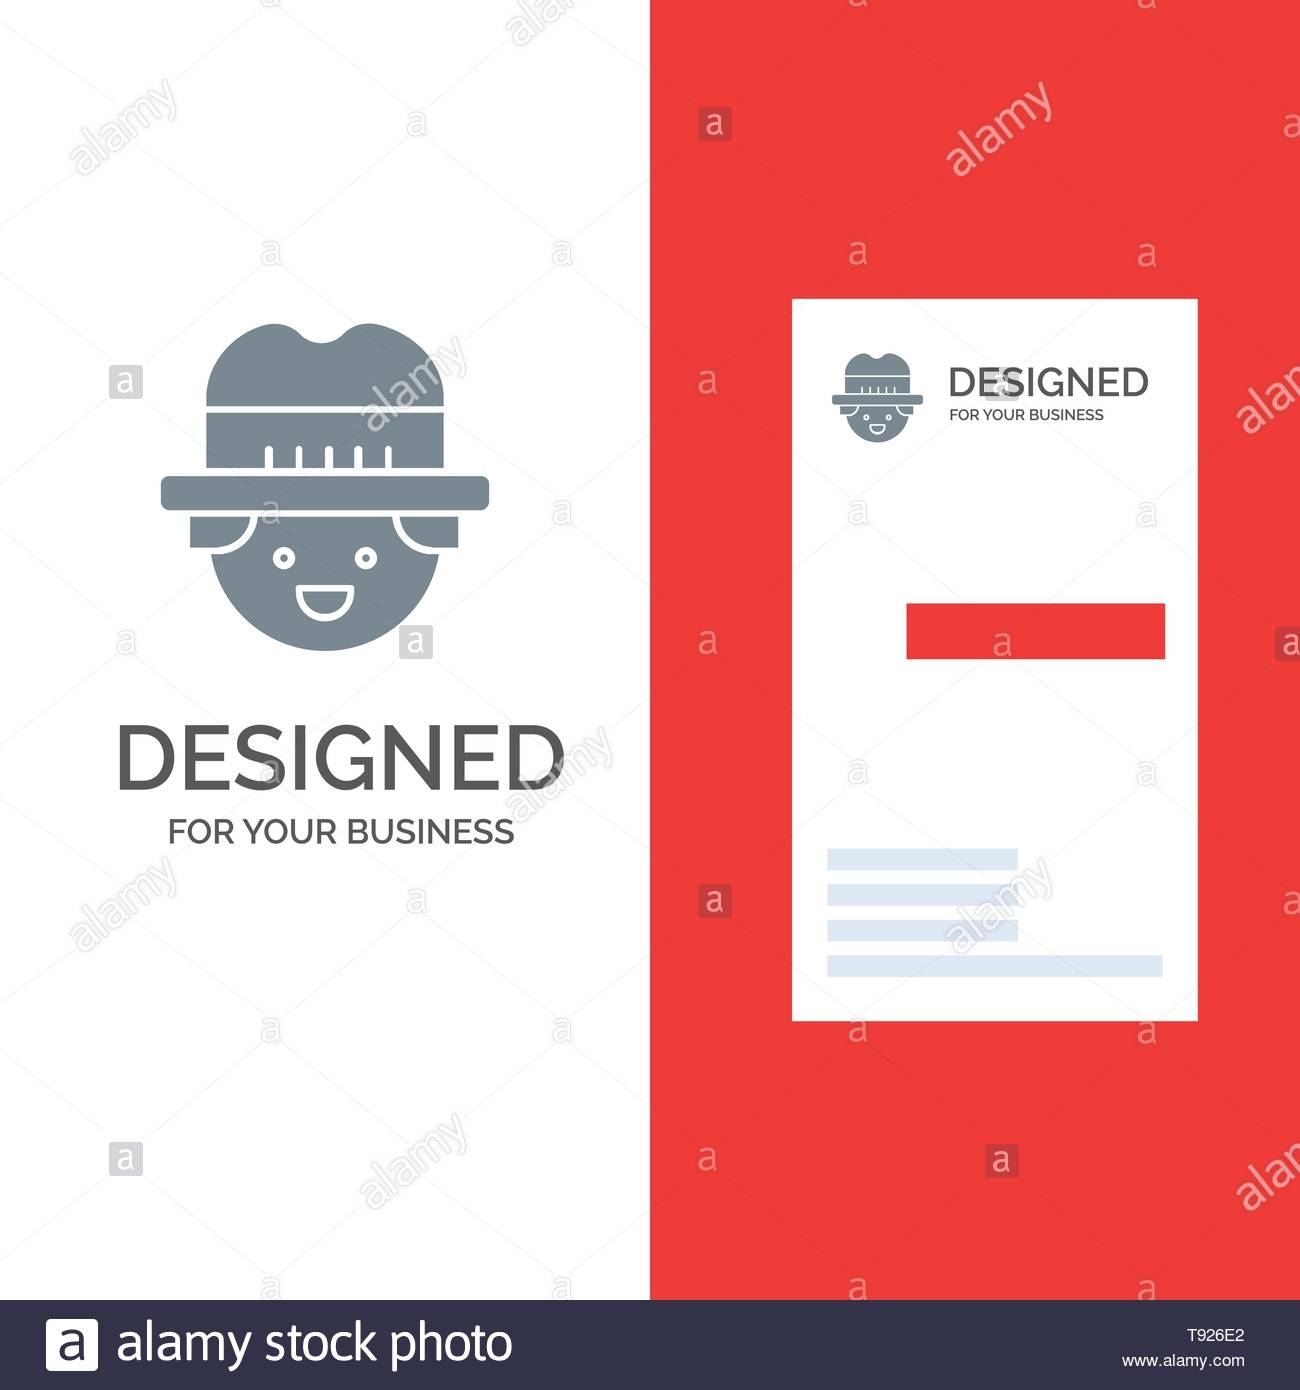 Bauern, Gärtner, Mann Grau Logo Design Und Business Card With Regard To Gartner Business Cards Template